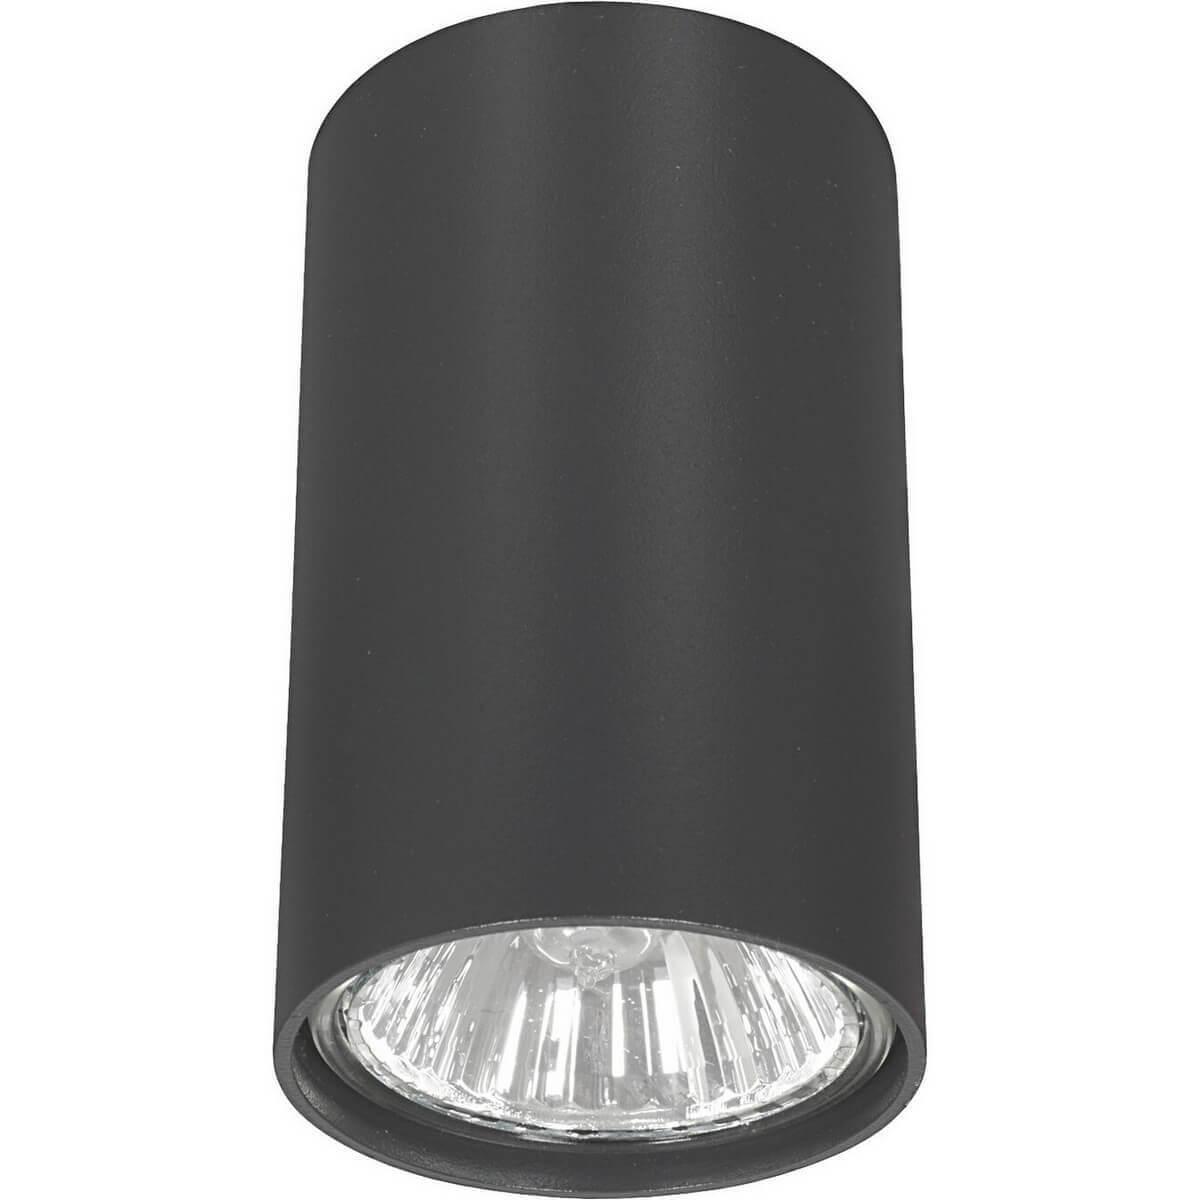 Потолочный светильник Nowodvorski Eye 5256 потолочный светильник tk lighting 4223 kantoor graphite